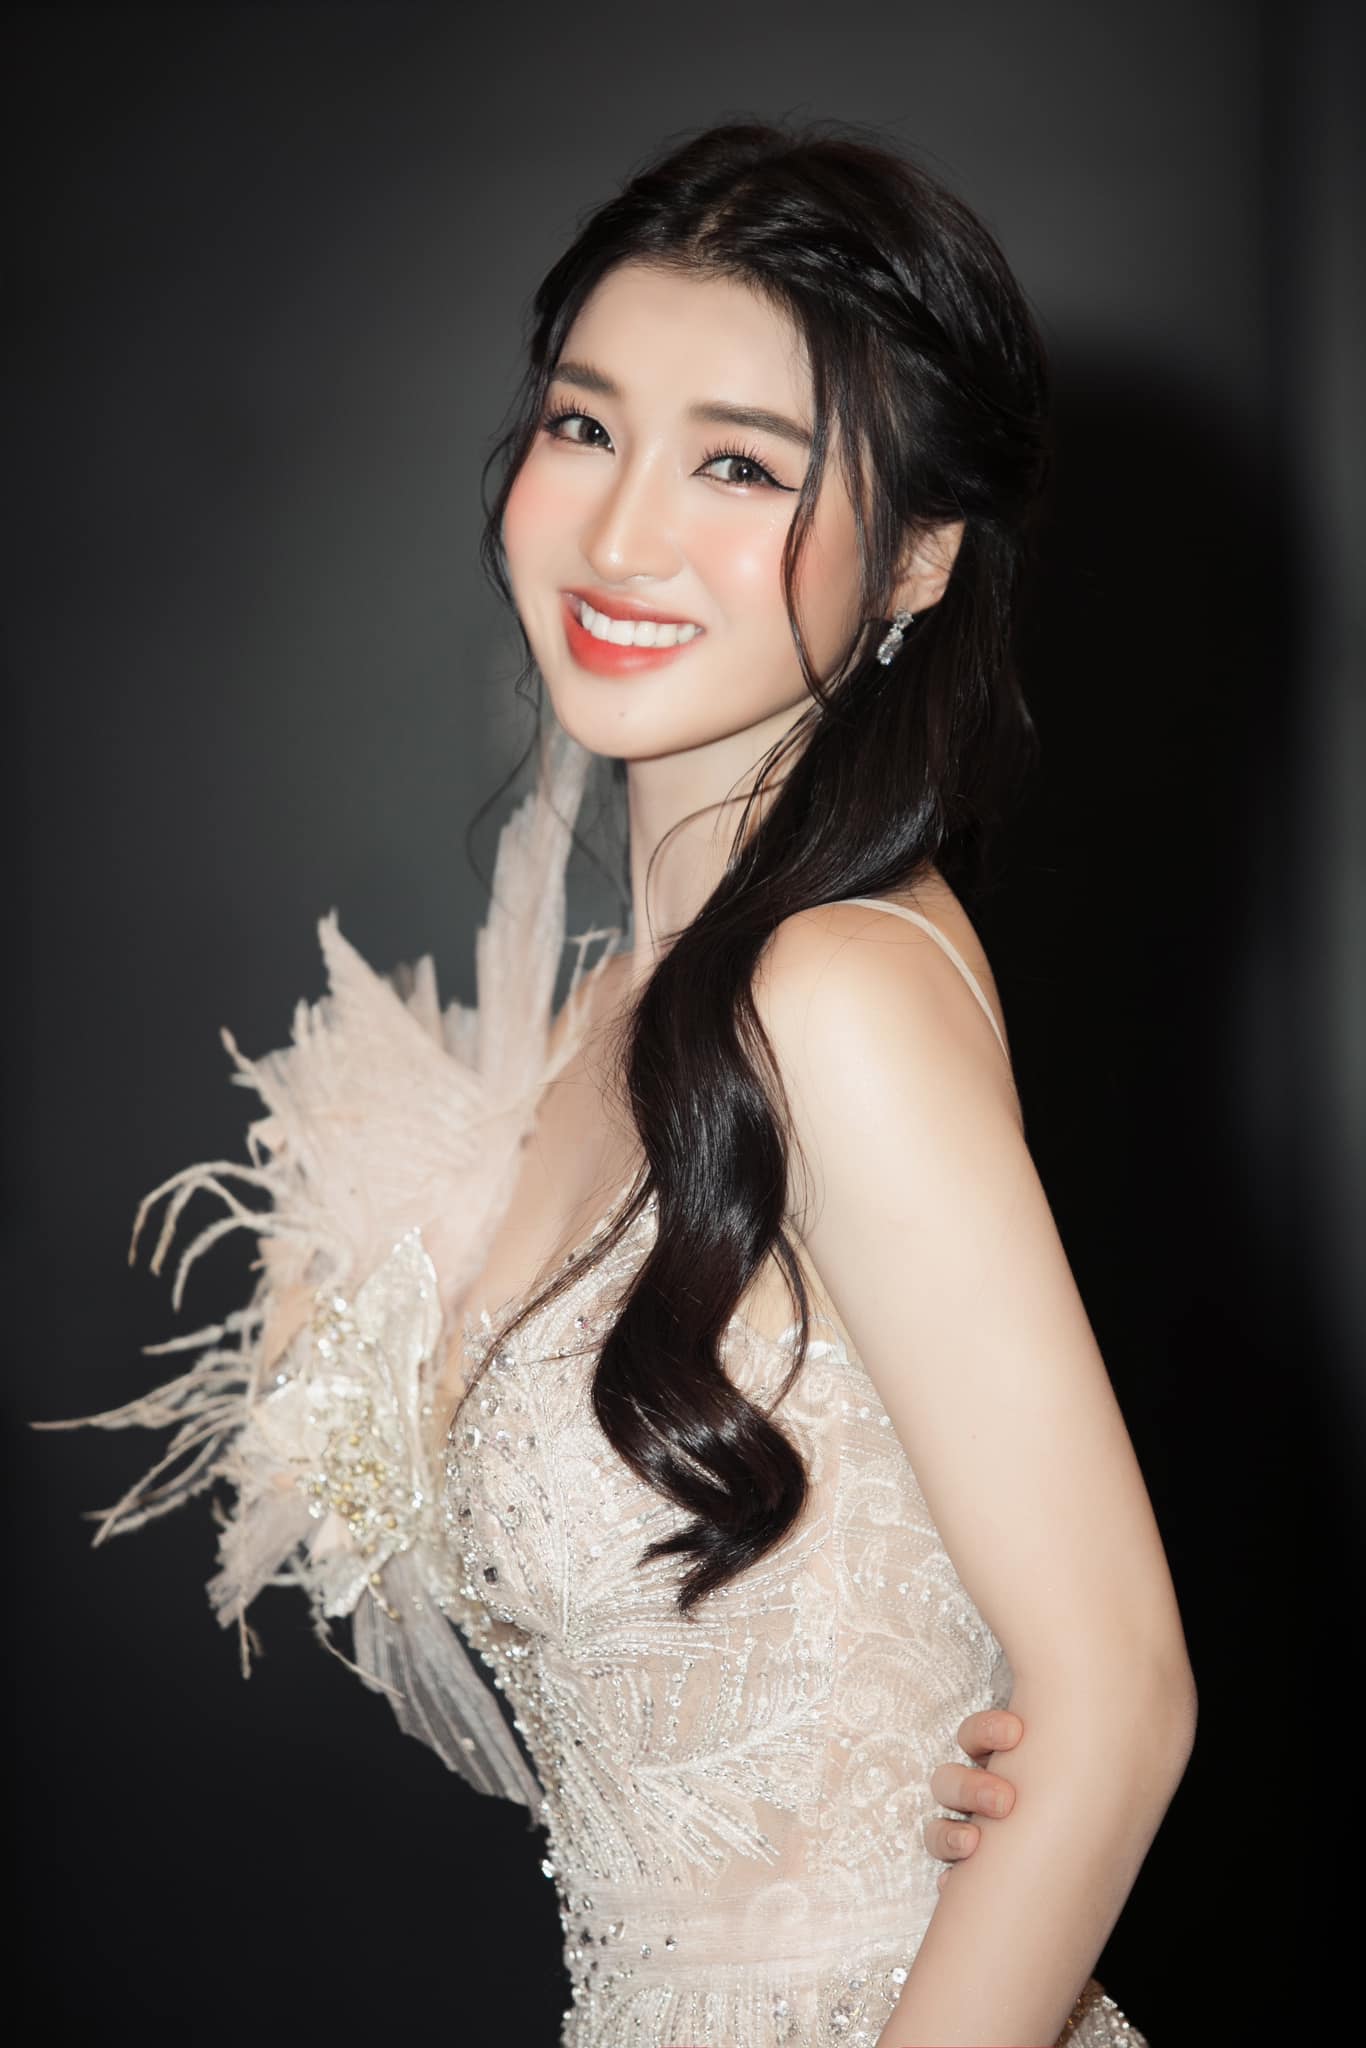 Phương Nhi và loạt ảnh xinh chuẩn thần tiên tỷ tỷ: Đẹp át cả Hoa hậu Việt Nam khi đụng hàng, ảnh cam thường gây bão - Hình 5